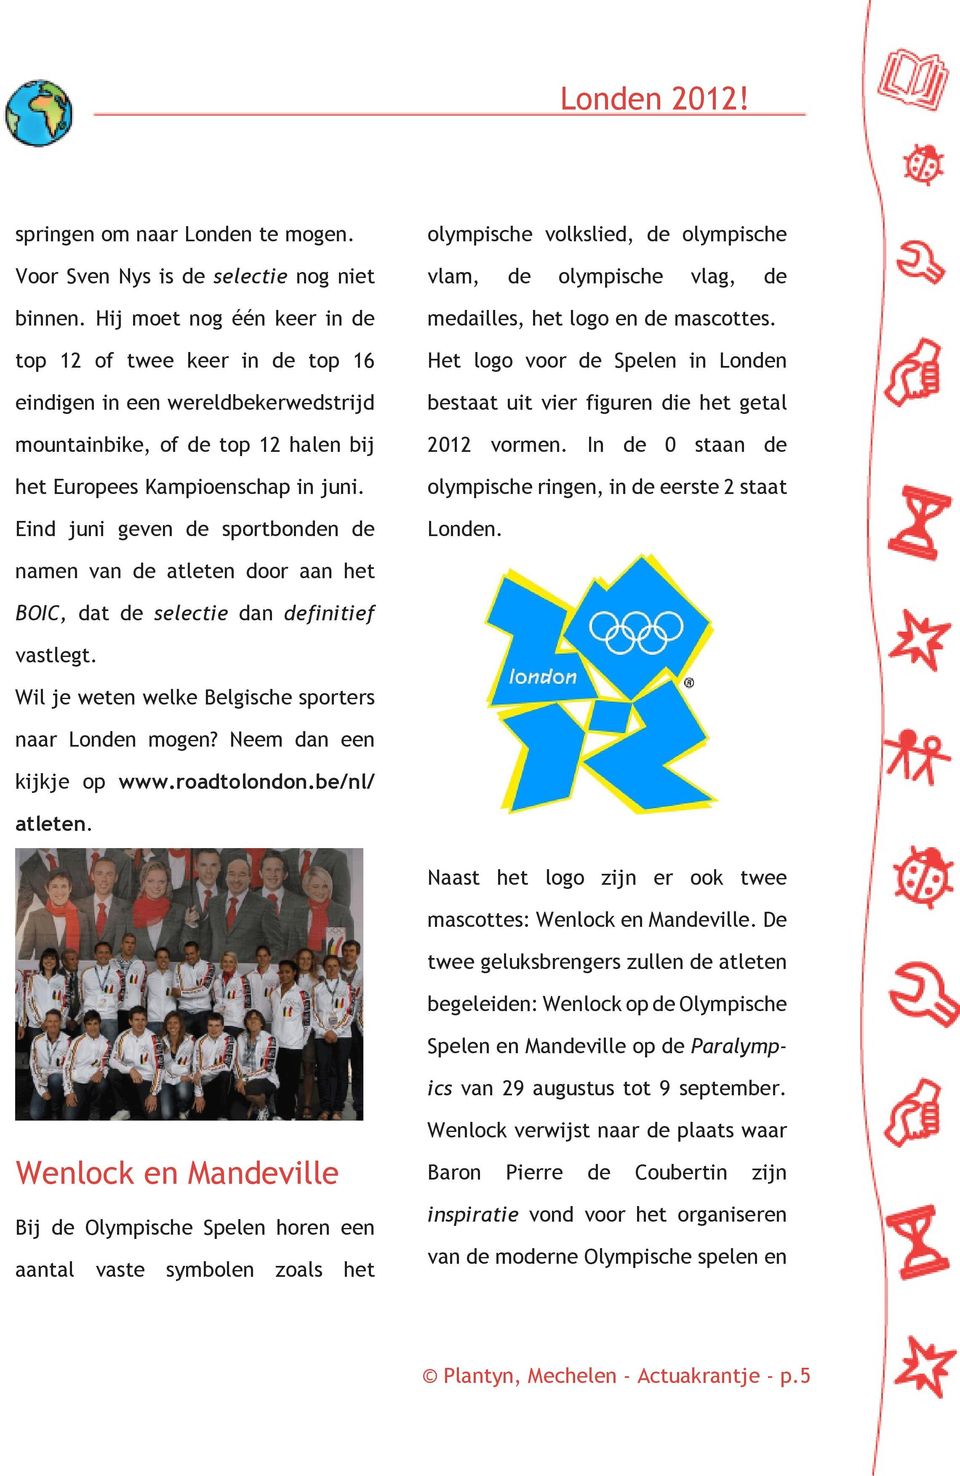 Eind juni geven de sportbonden de olympische volkslied, de olympische vlam, de olympische vlag, de medailles, het logo en de mascottes.